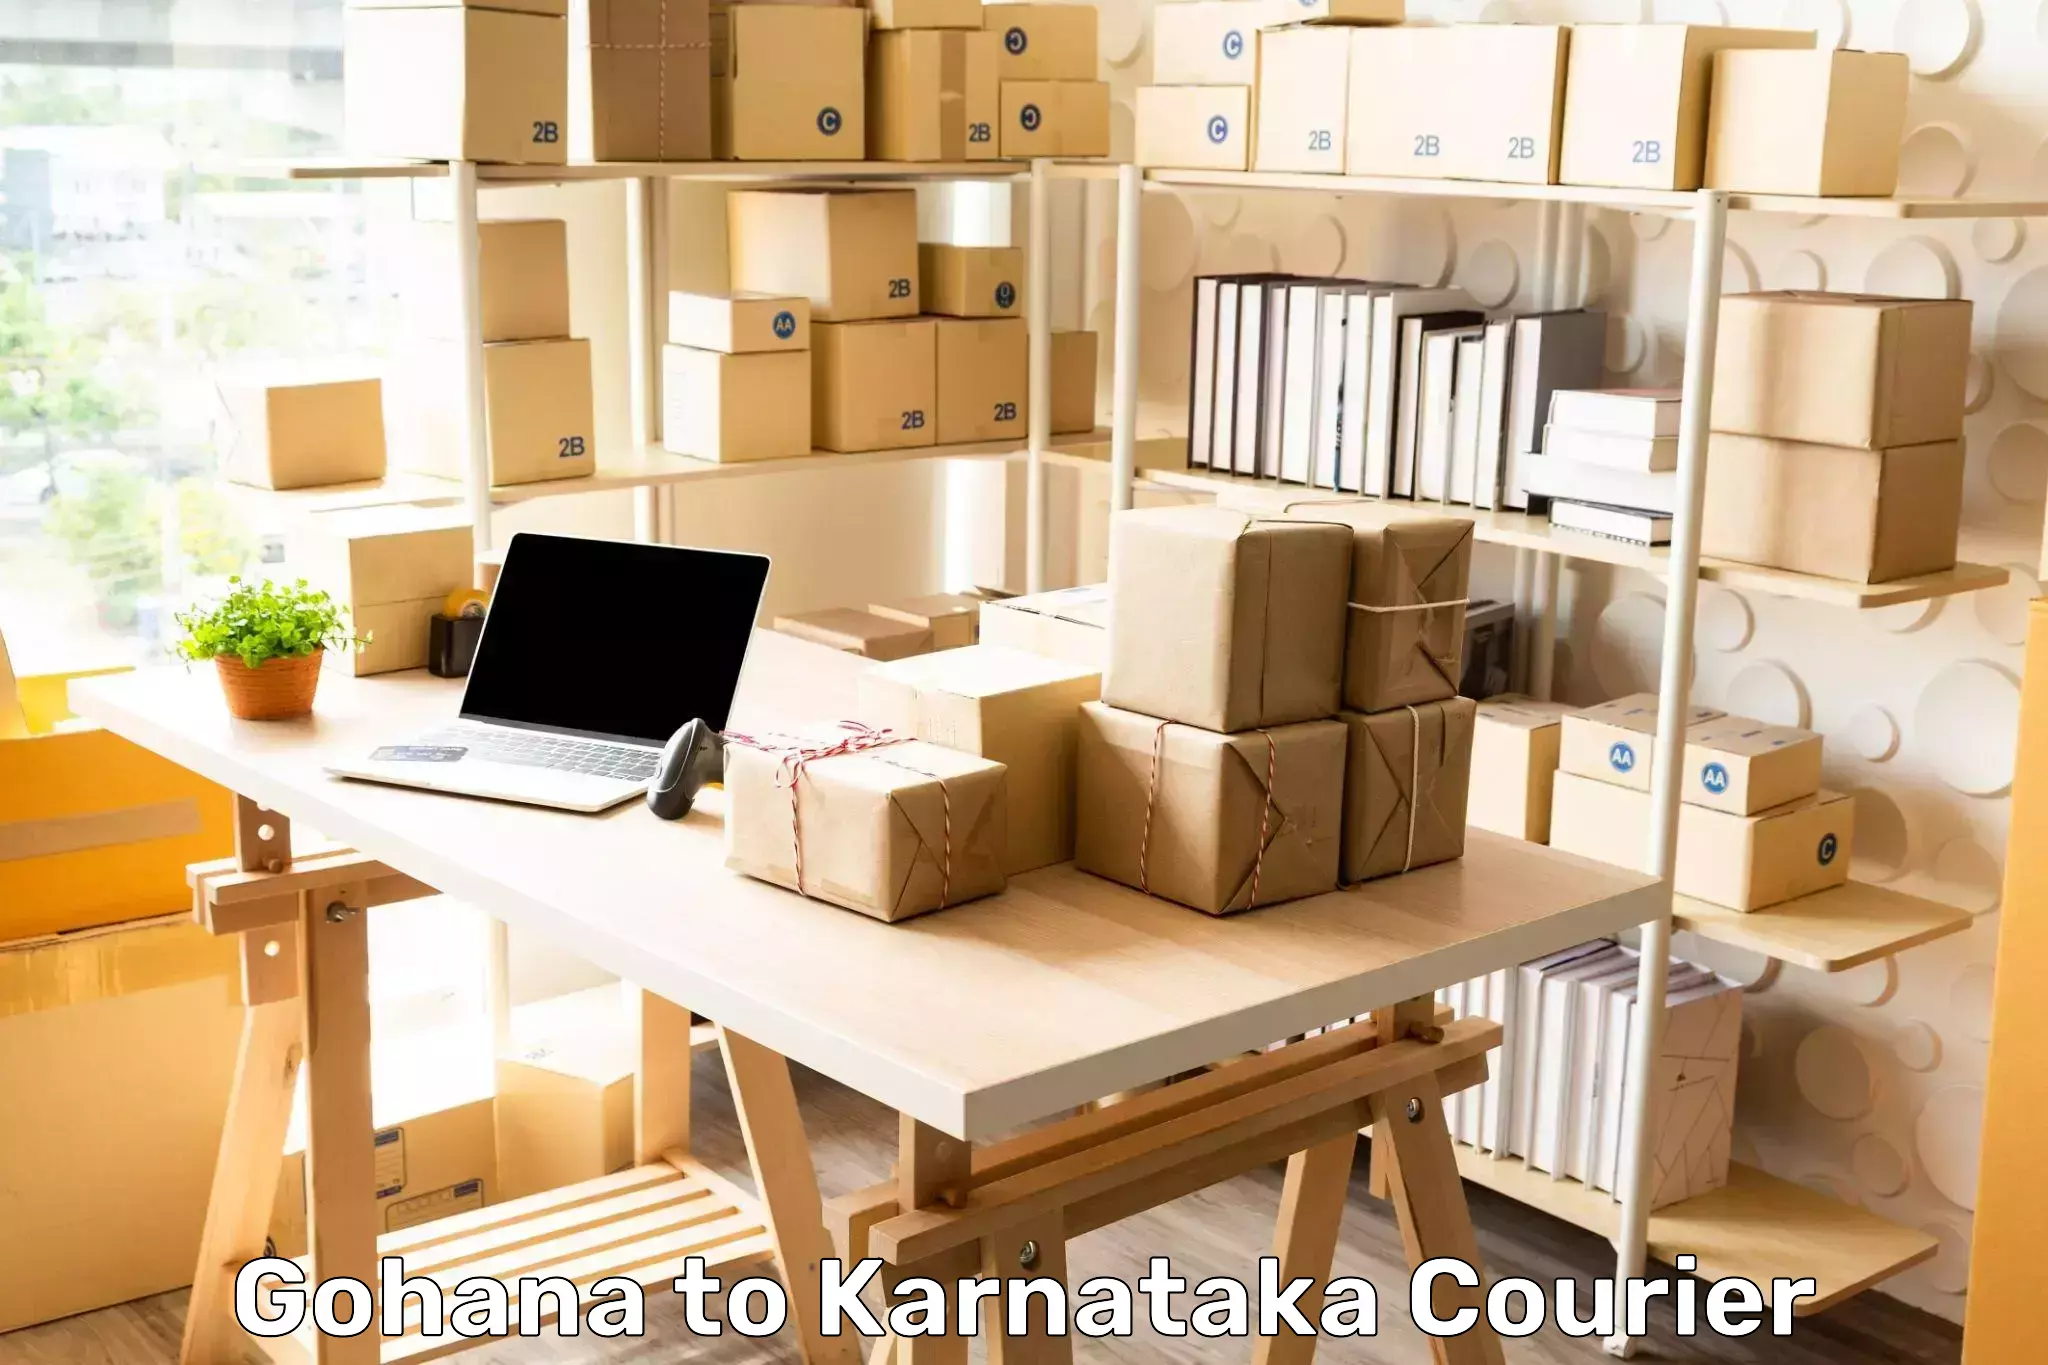 High-capacity parcel service Gohana to Harohalli